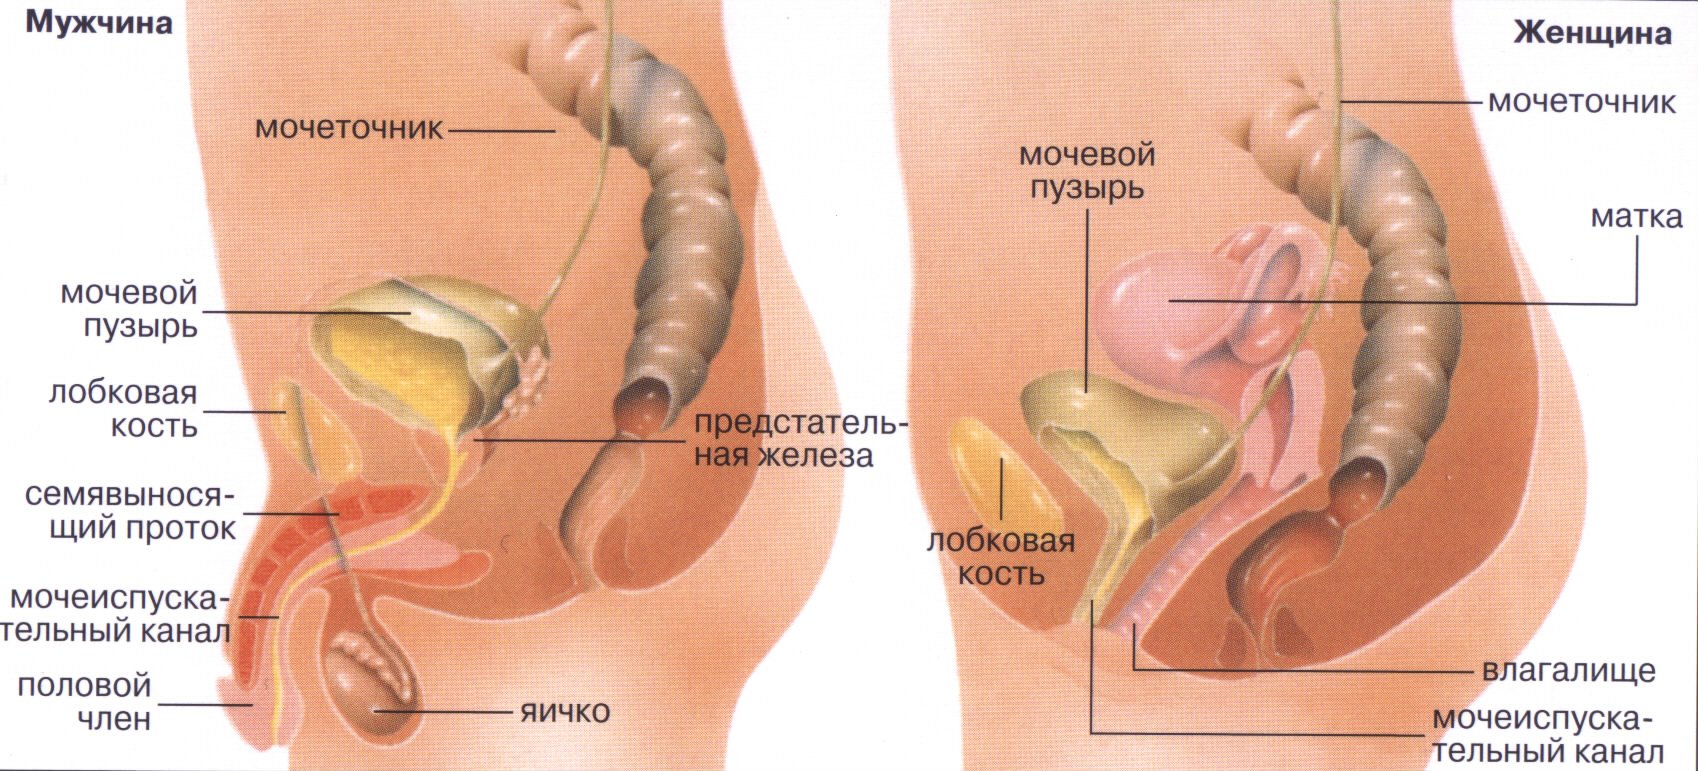 Мочеточники матка. Мочевой пузырь анатомия расположение. Анатомия мужской мочеполовой системы. Мочеточник у женщин расположение. Анатомия мочеполовой системы женщины.